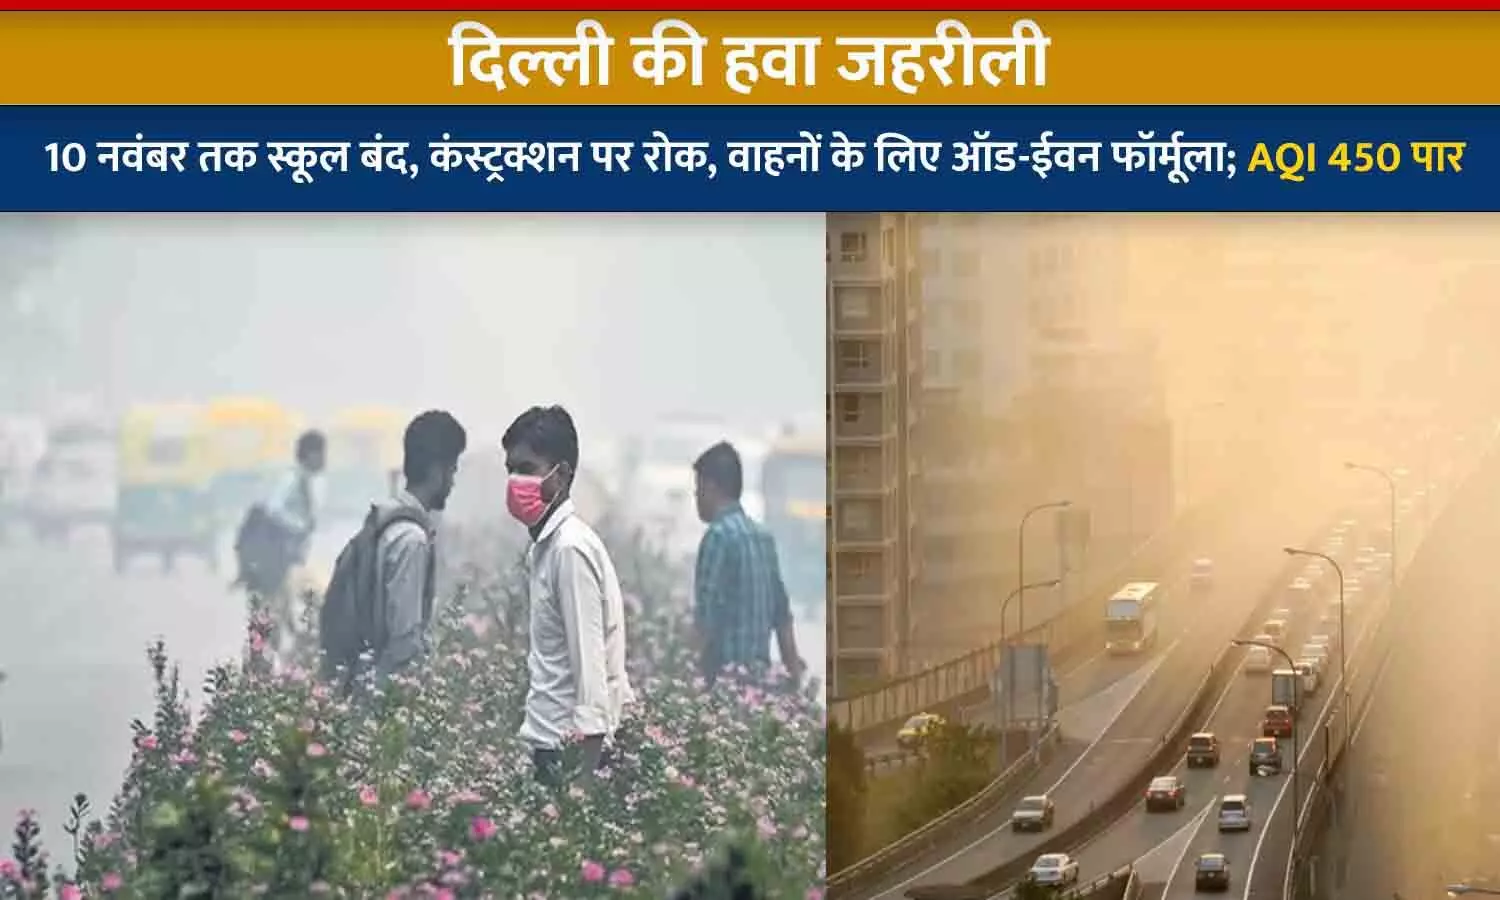 दिल्ली की हवा जहरीली: 10 नवंबर तक स्कूल बंद, कंस्ट्रक्शन पर रोक, वाहनों के लिए ऑड-ईवन फॉर्मूला; AQI 450 पार